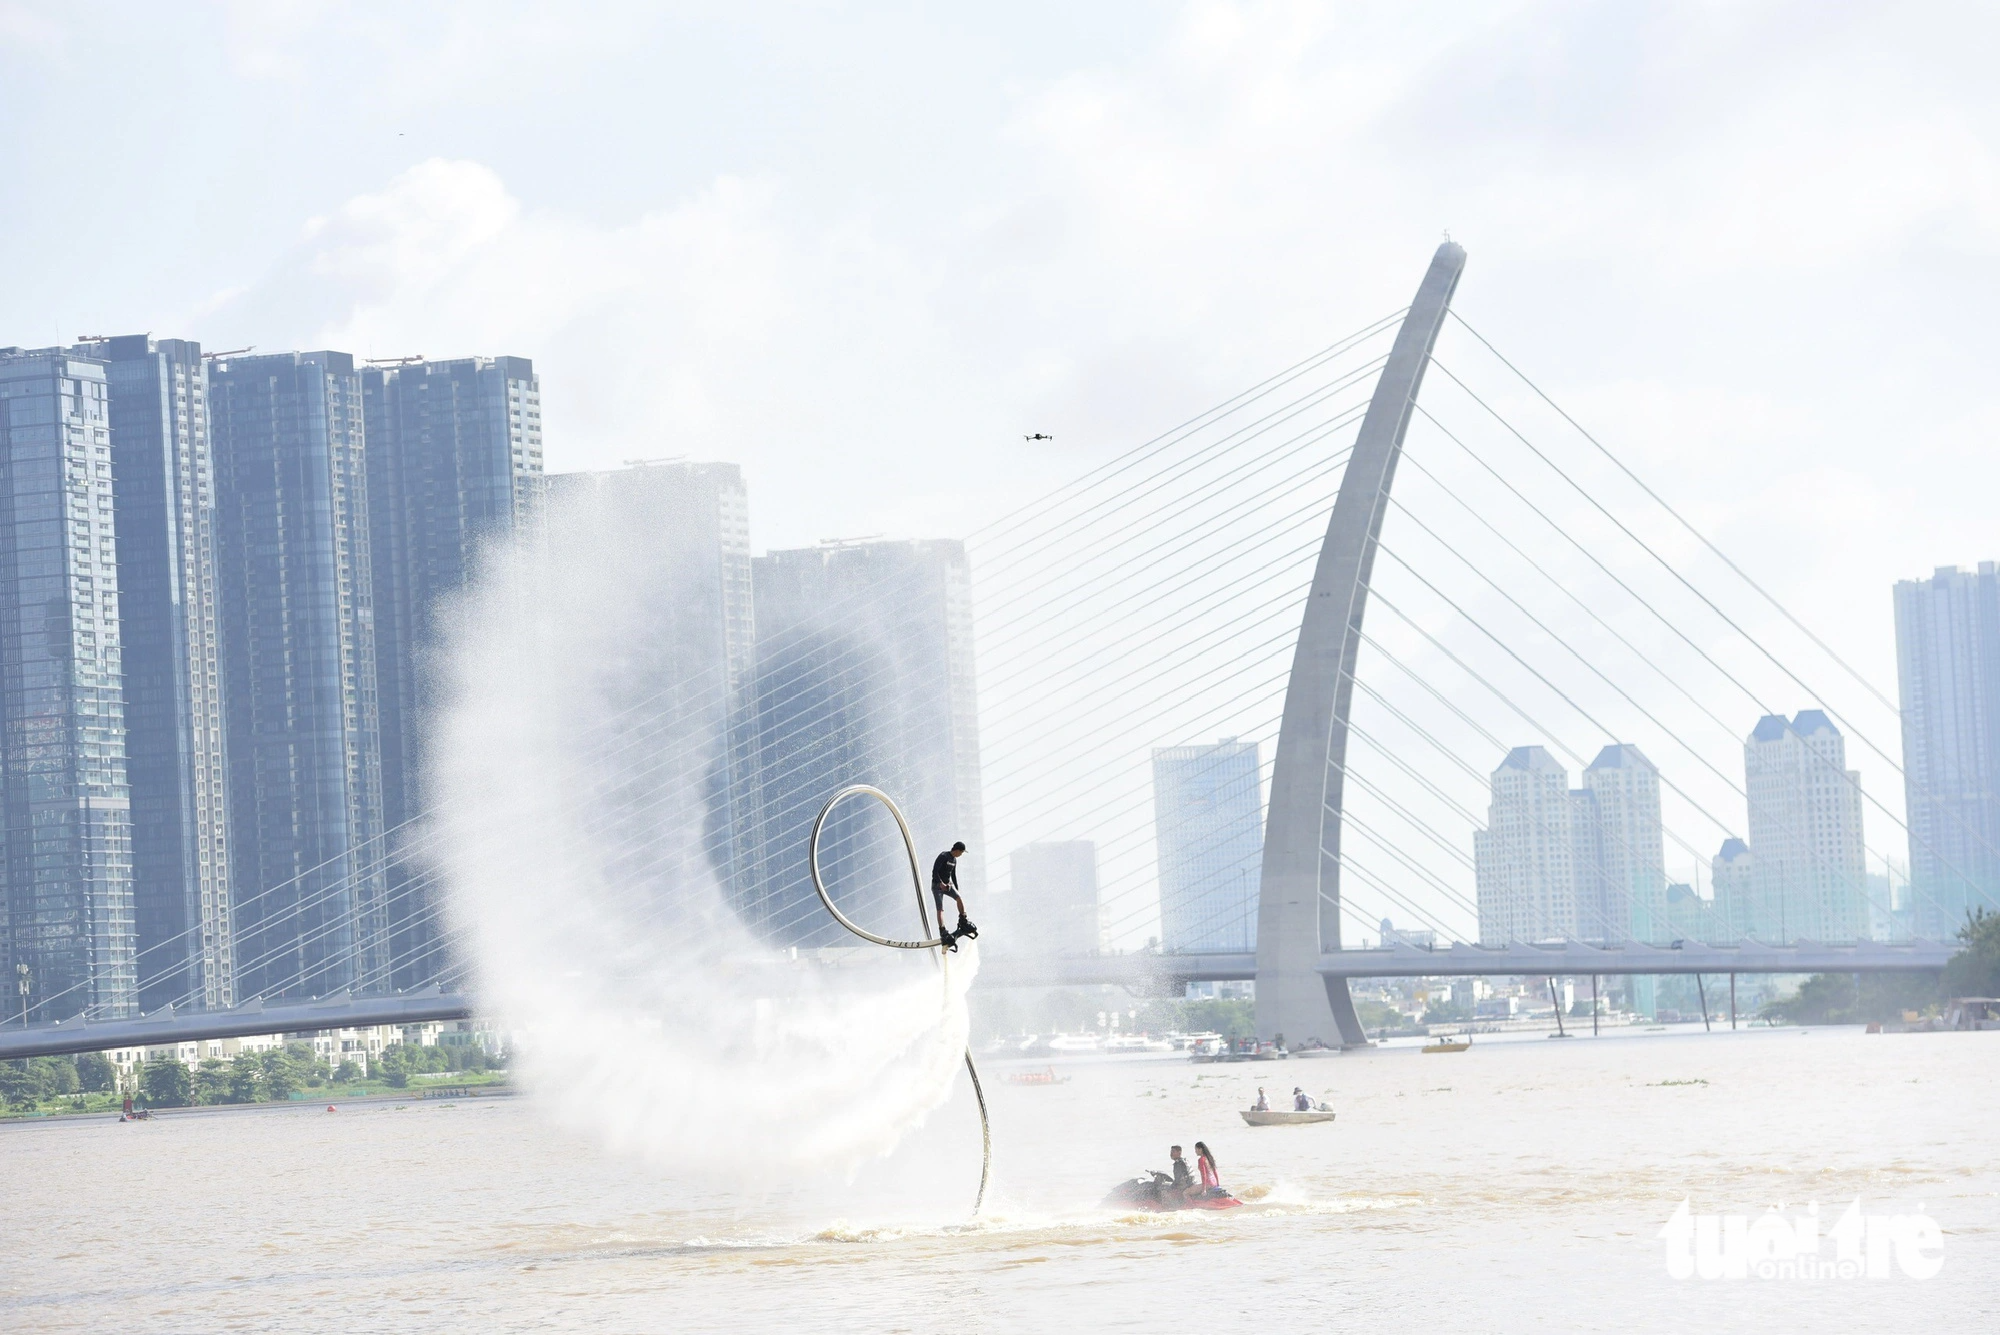 Lễ hội Sông nước: Đua thuyền, lướt ván khuấy động sông Sài Gòn - Ảnh 11.